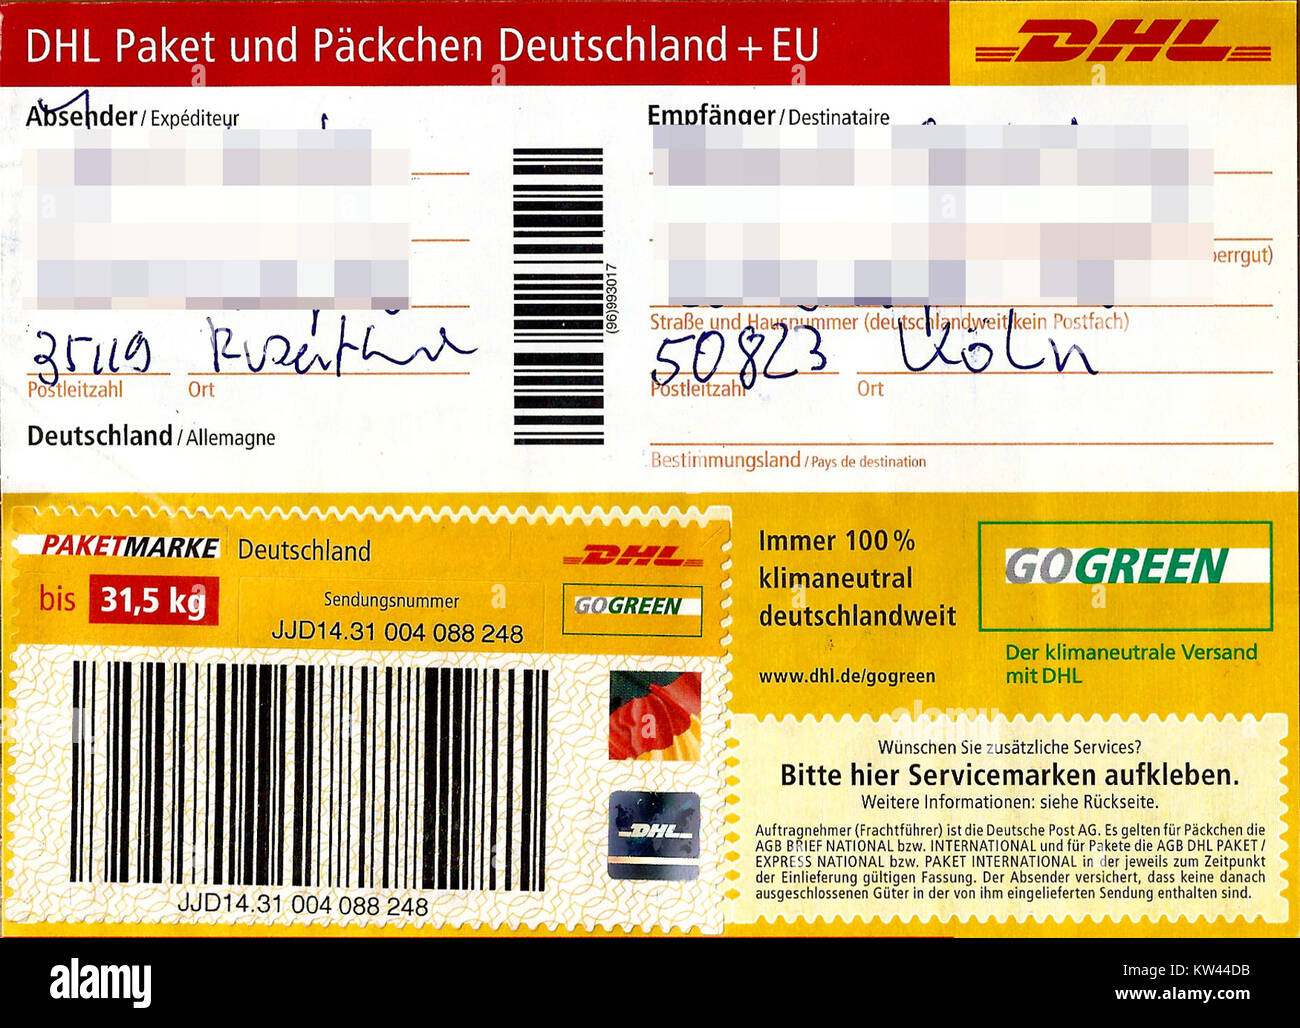 Paketaufkleber DHL Paket mit Paketmarke bis 31,5 kg 2016 Stock Photo - Alamy